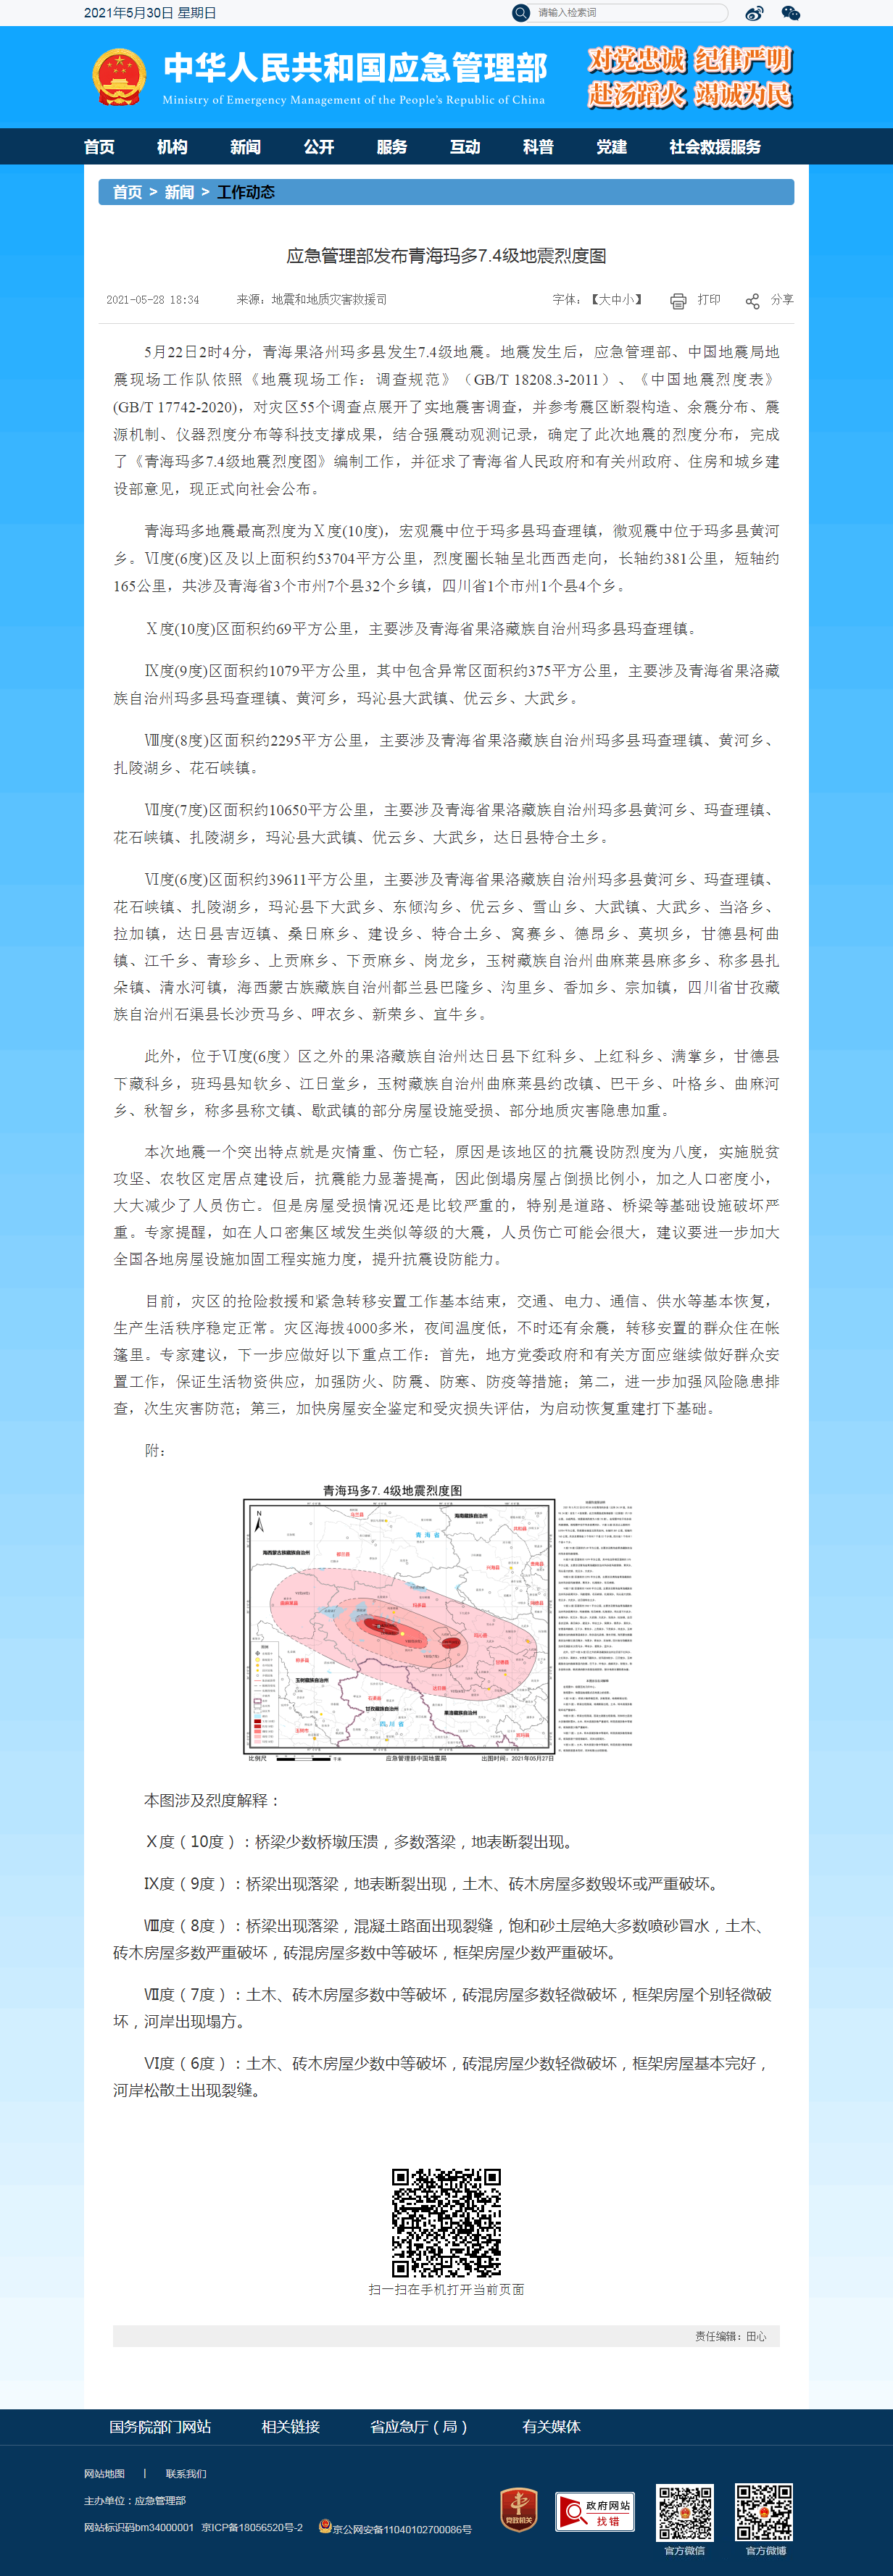 应急管理部发布青海玛多7.4级地震烈度图--中华人民共和国应急管理部.png